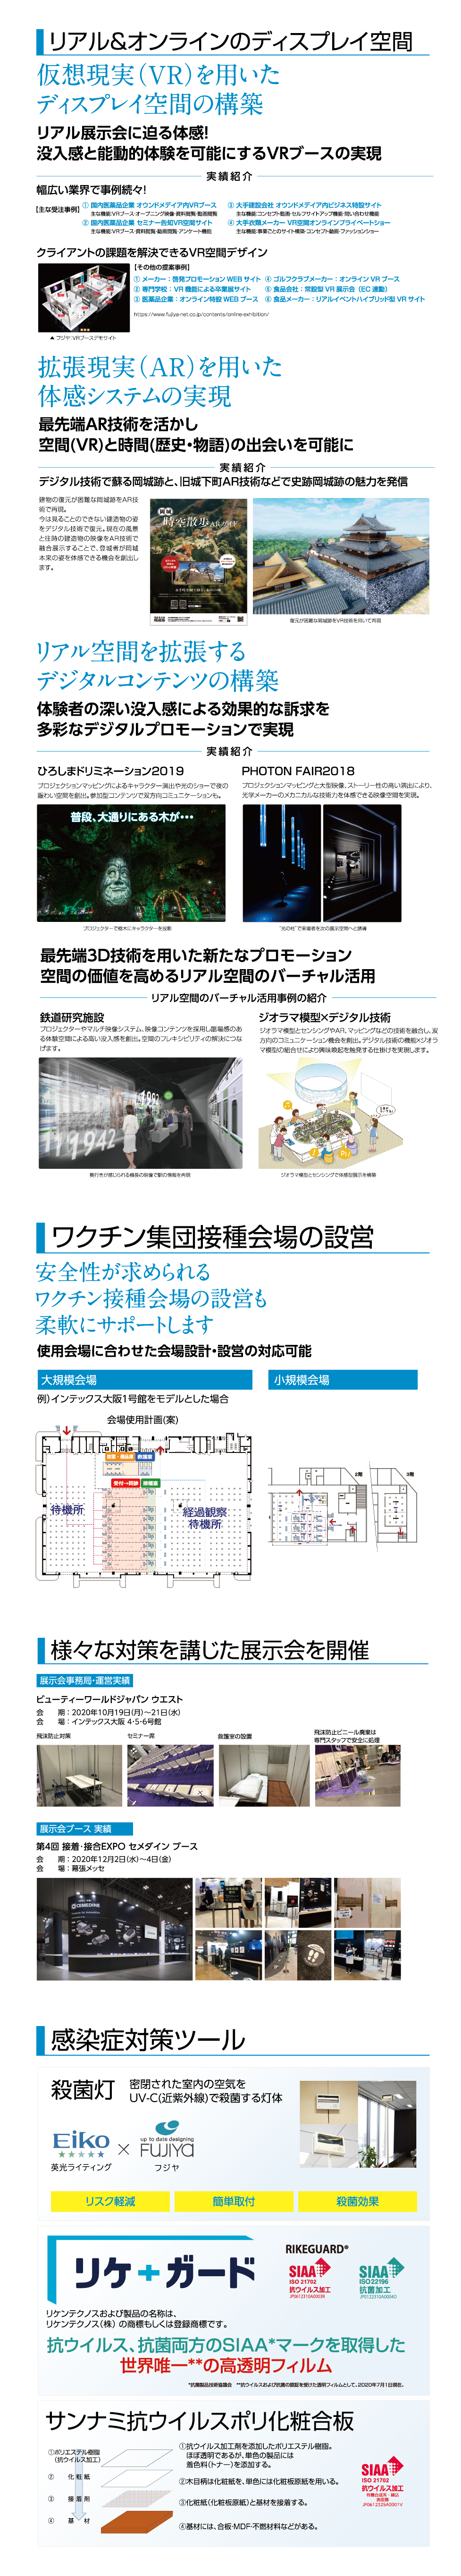 大阪 MICE 安全対策推進 EXPO2021